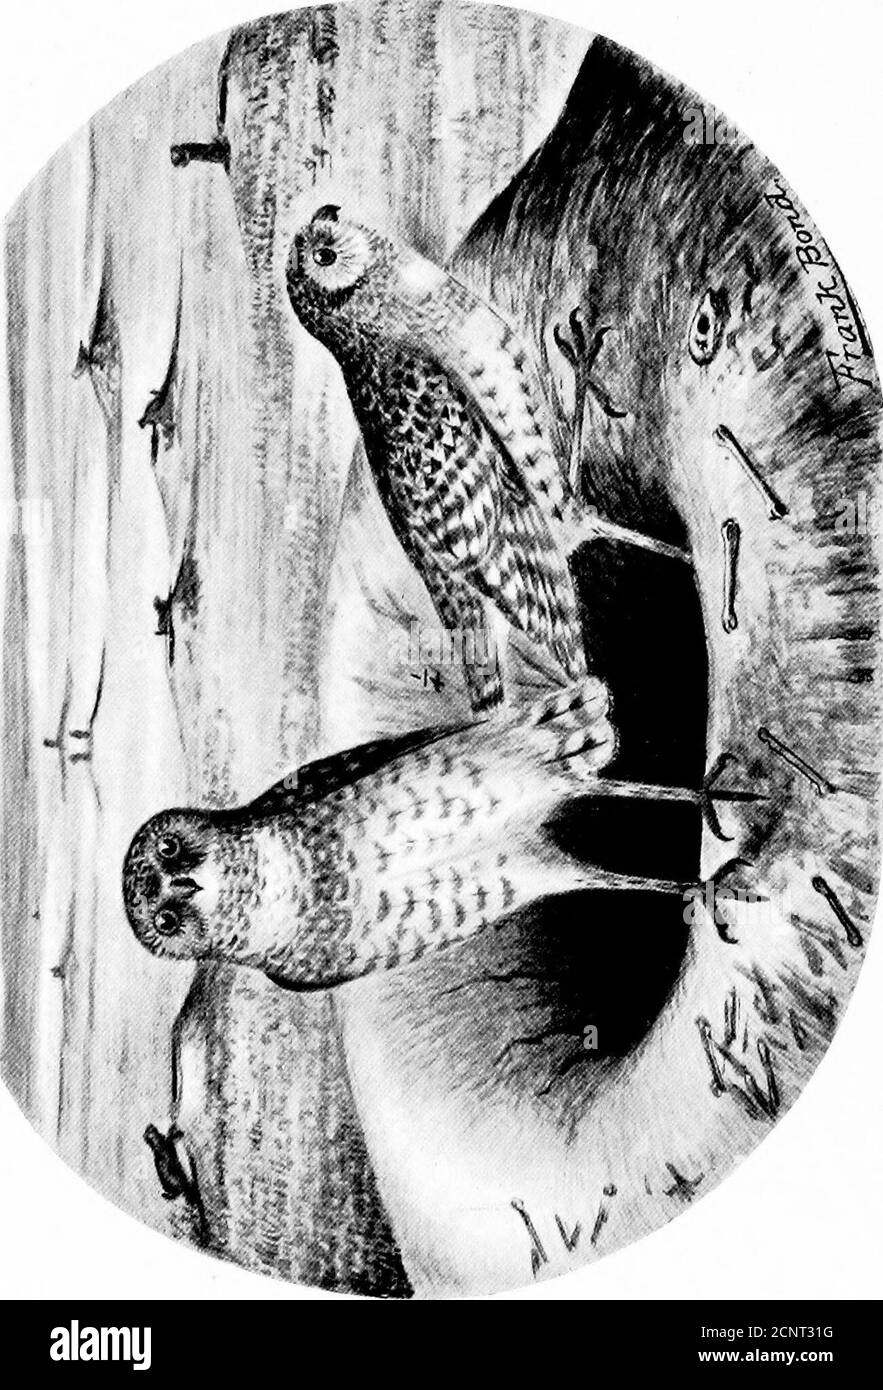 . Die Vögel von Wyoming . 1. DRYOBATES VILLOSUS MONTICOLA. Rocky Mountain Hairy Woodpeclier.MELANERPES TORQUATUS. Lewiss Specht... Die Vögel von Wyoming. S7 EISVÖGEL. 390. Ceryle alcyon (Linn.).Belted Eisvogel, Sommer Wohnsitz und gemeinsam entlang bewaldeten Bächen bis zu 8,000 Fuß. Der einzige Einwand gegen diesen schönen Vogel ist, dass er die Ströme der kleinen Brut erschöpft; aber dies ist nicht von suf-ficient Bedeutung, um einen Schritt zu rechtfertigen, um für theirextermination. Im Vergleich zu vielen anderen Arten sind sie in der Zahl wenige. Sie sind wirklich erfahrene Fischer und seldommiss ihre Beute, wenn sie suchen Stockfoto